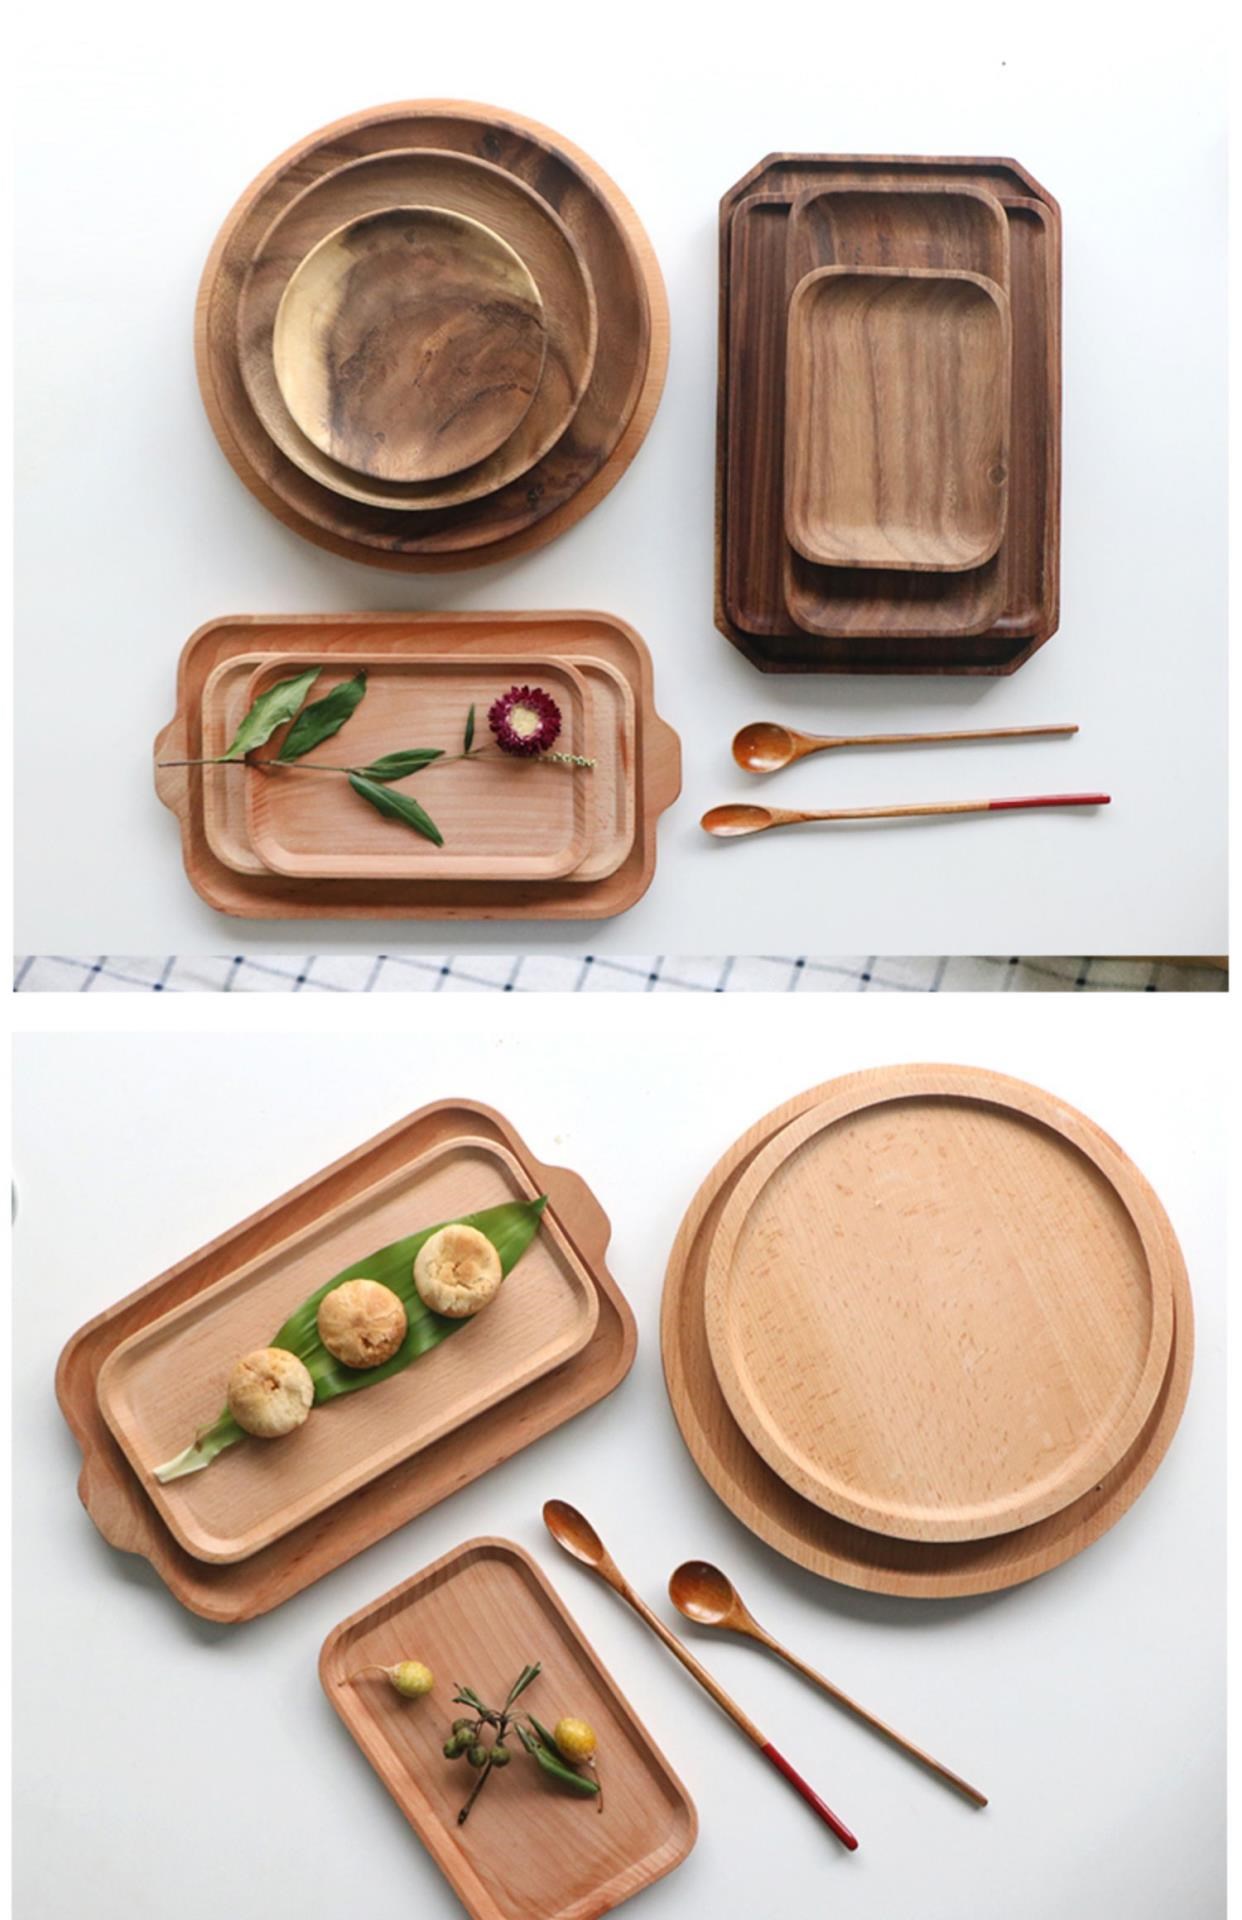 Khay retro vững chắc khay gỗ bữa ăn bằng gỗ hình chữ nhật nước kiểu Nhật Bản bánh mì bằng gỗ gia đình khay trà khay trái cây - Tấm